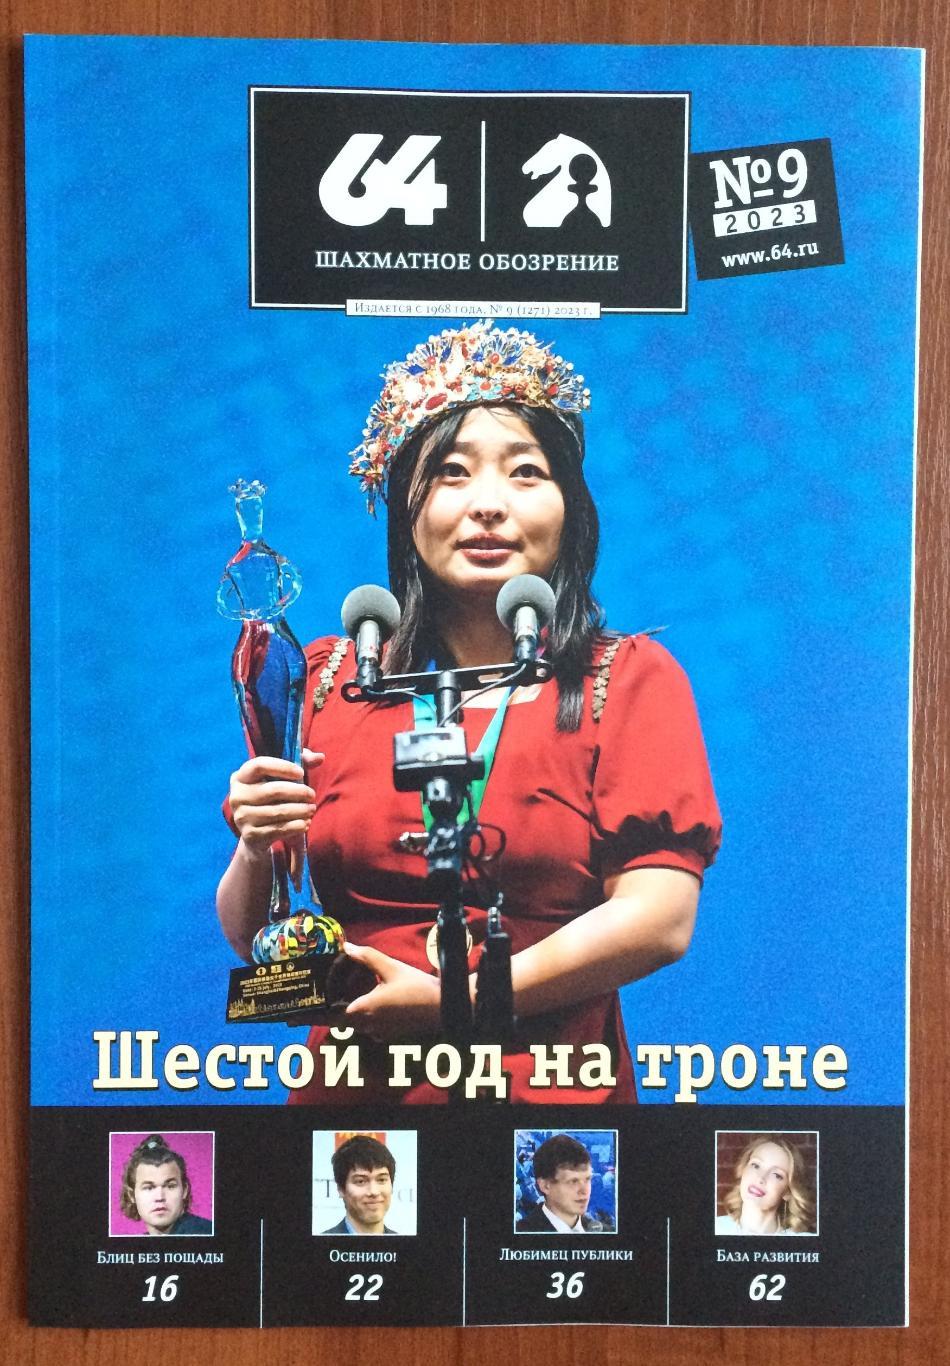 Журнал 64 Шахматное обозрение № 9 2023 год